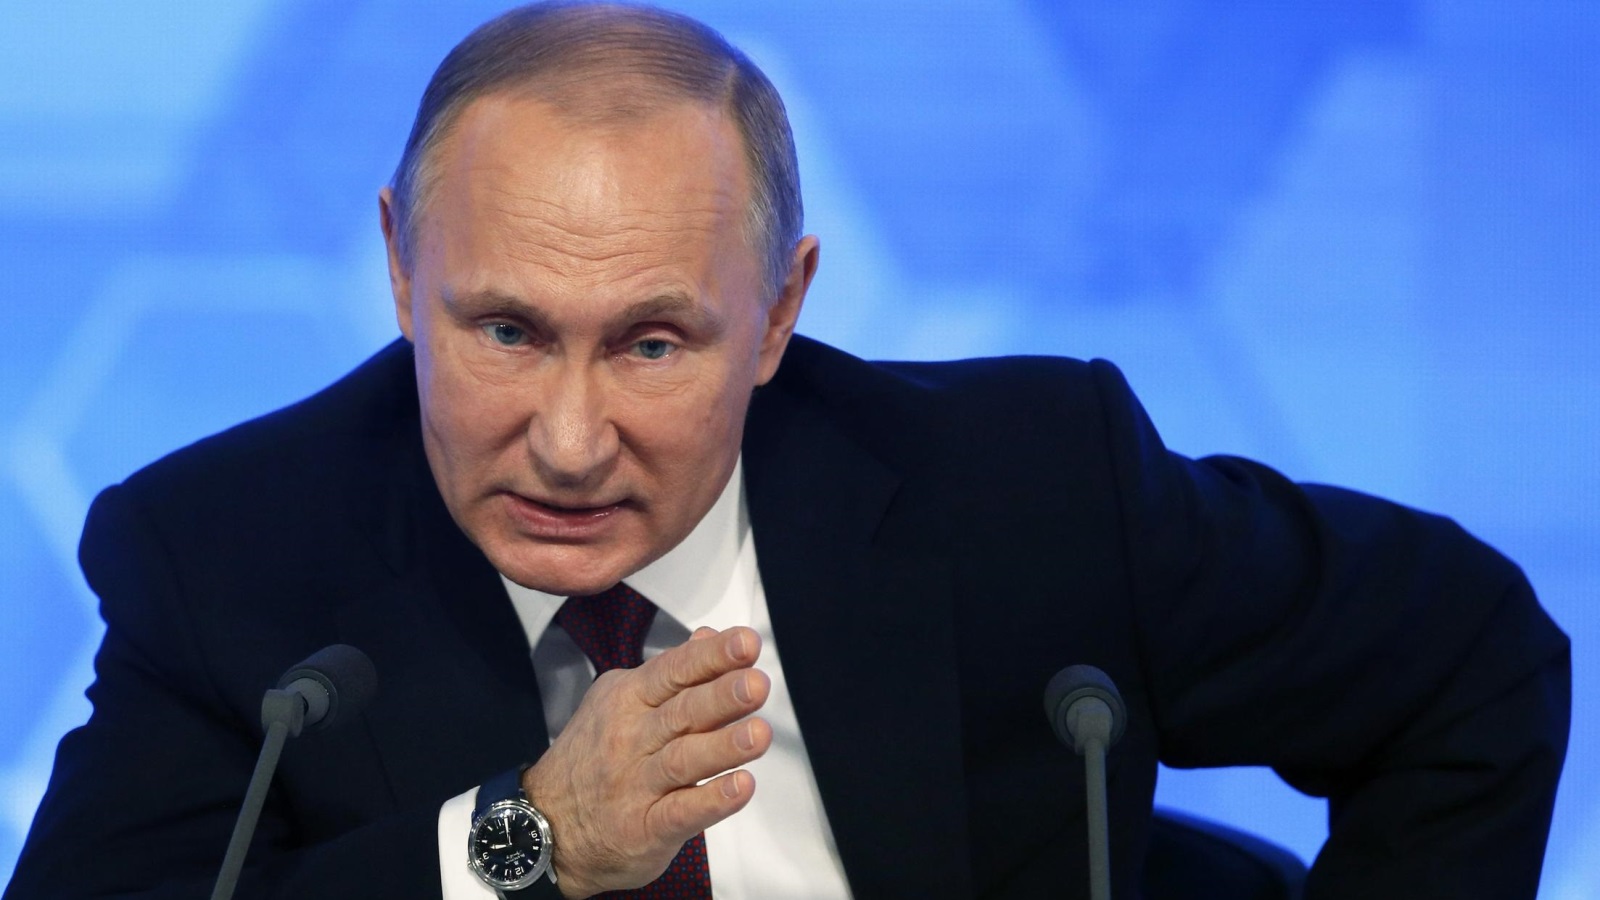 بوتين صادق على اتفاقية لنشر قوات روسية في سوريا إلى أجل غير مسمى (الأوروبية)